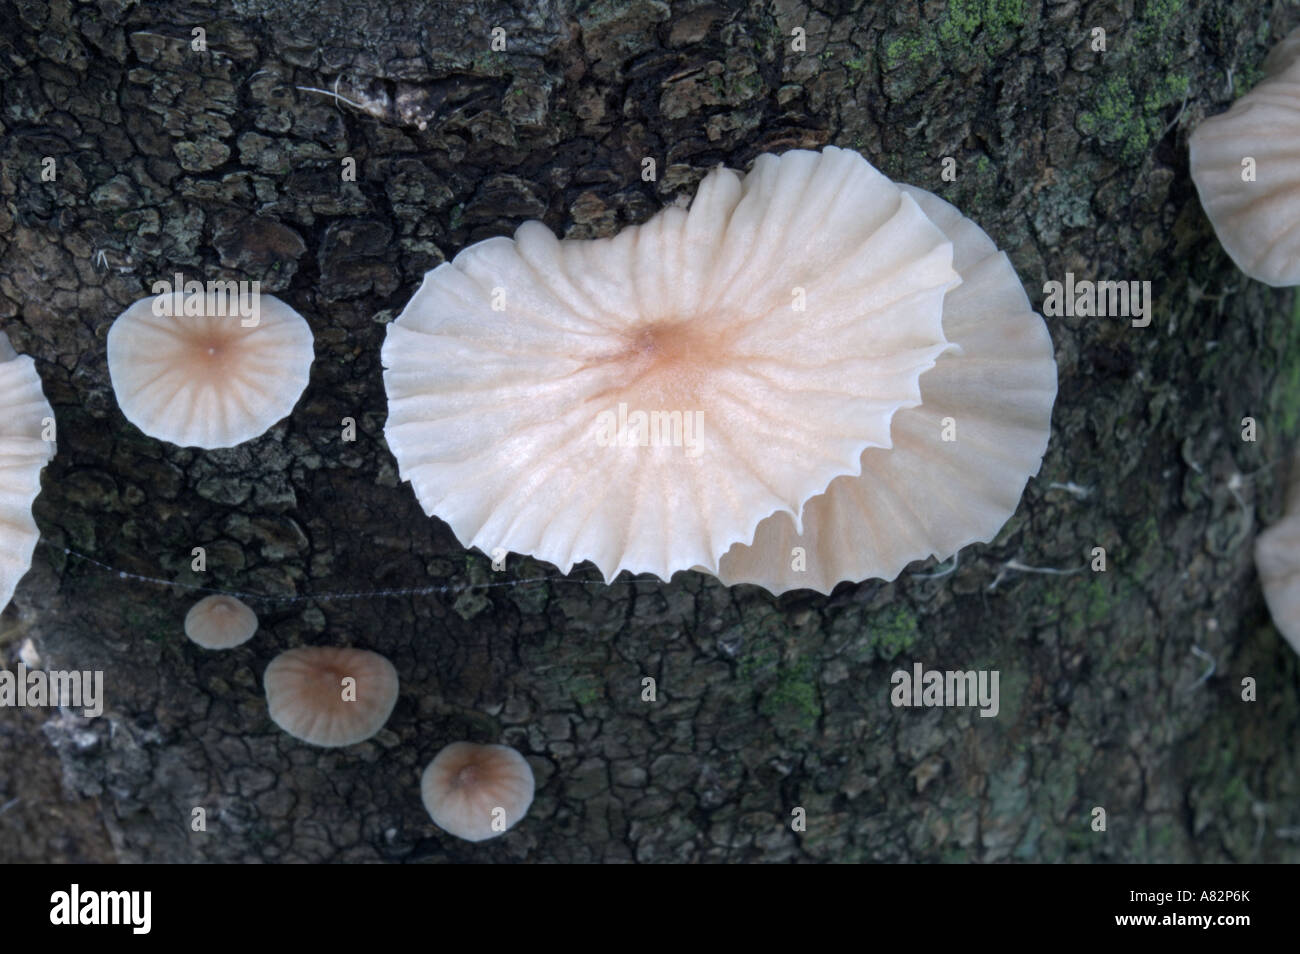 Marasmiellus candidus fungus Stock Photo